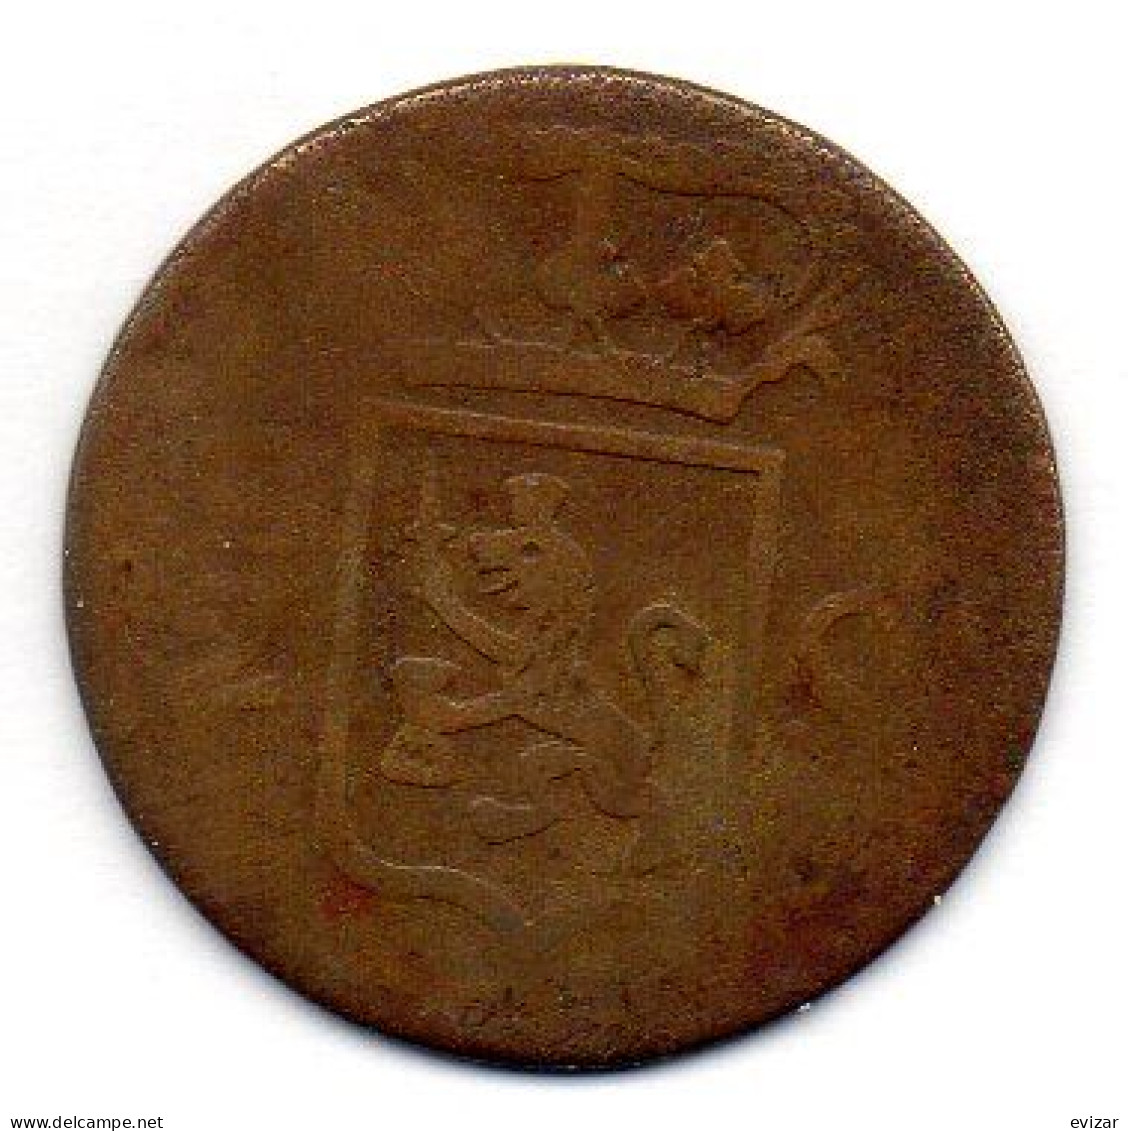 NETHERLAND INDONESIA - SUMATRA, 1/2 Stuiver, Copper, Year 1822, KM # 284.2 - Indonesia